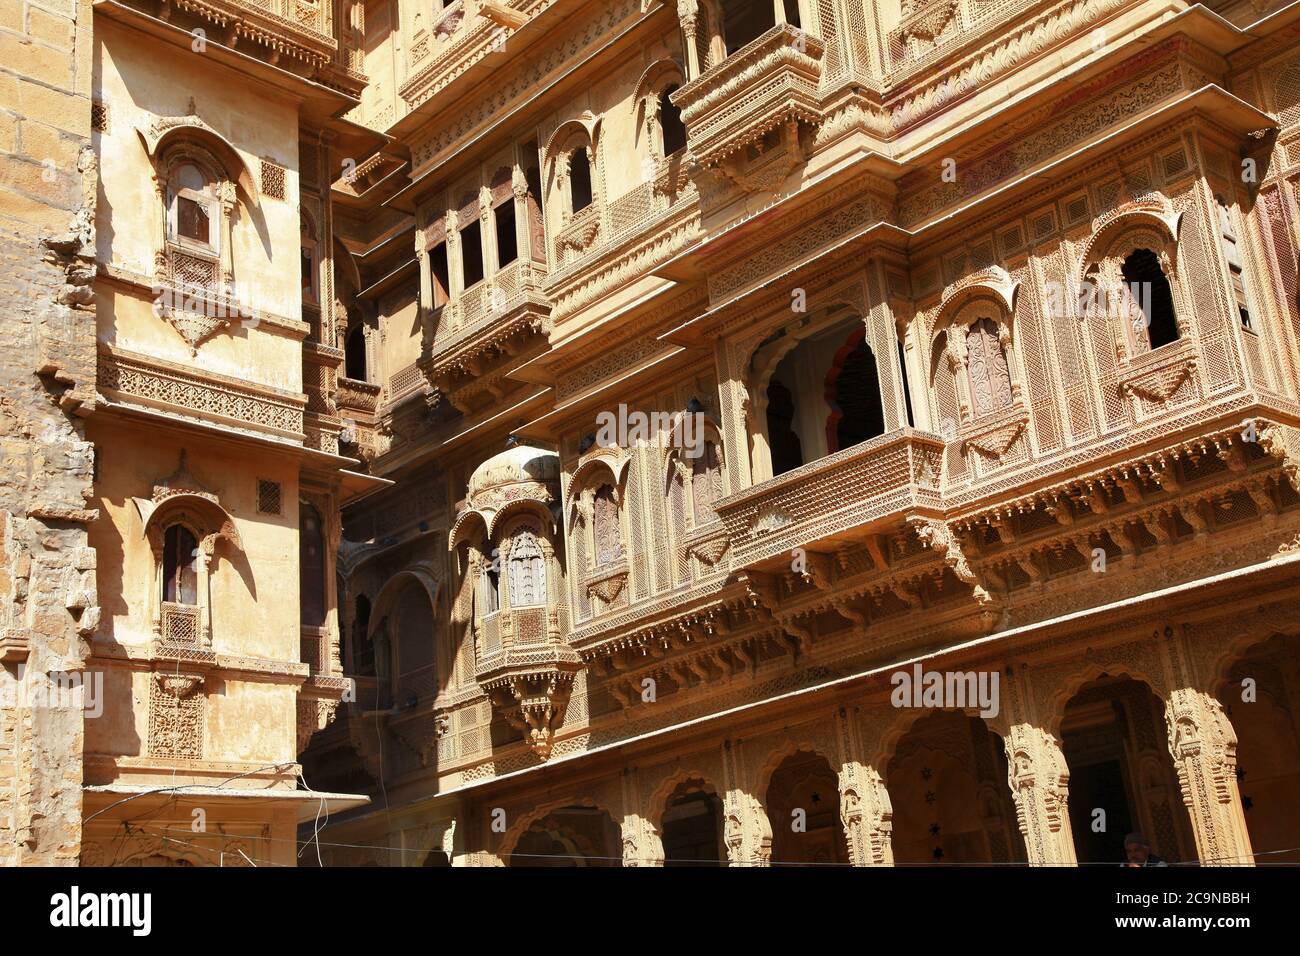 Ciudad de oro de la India - maravilloso Jaisalmer con edificios tradicionales tallados estilo Mughal. Rajastán Foto de stock